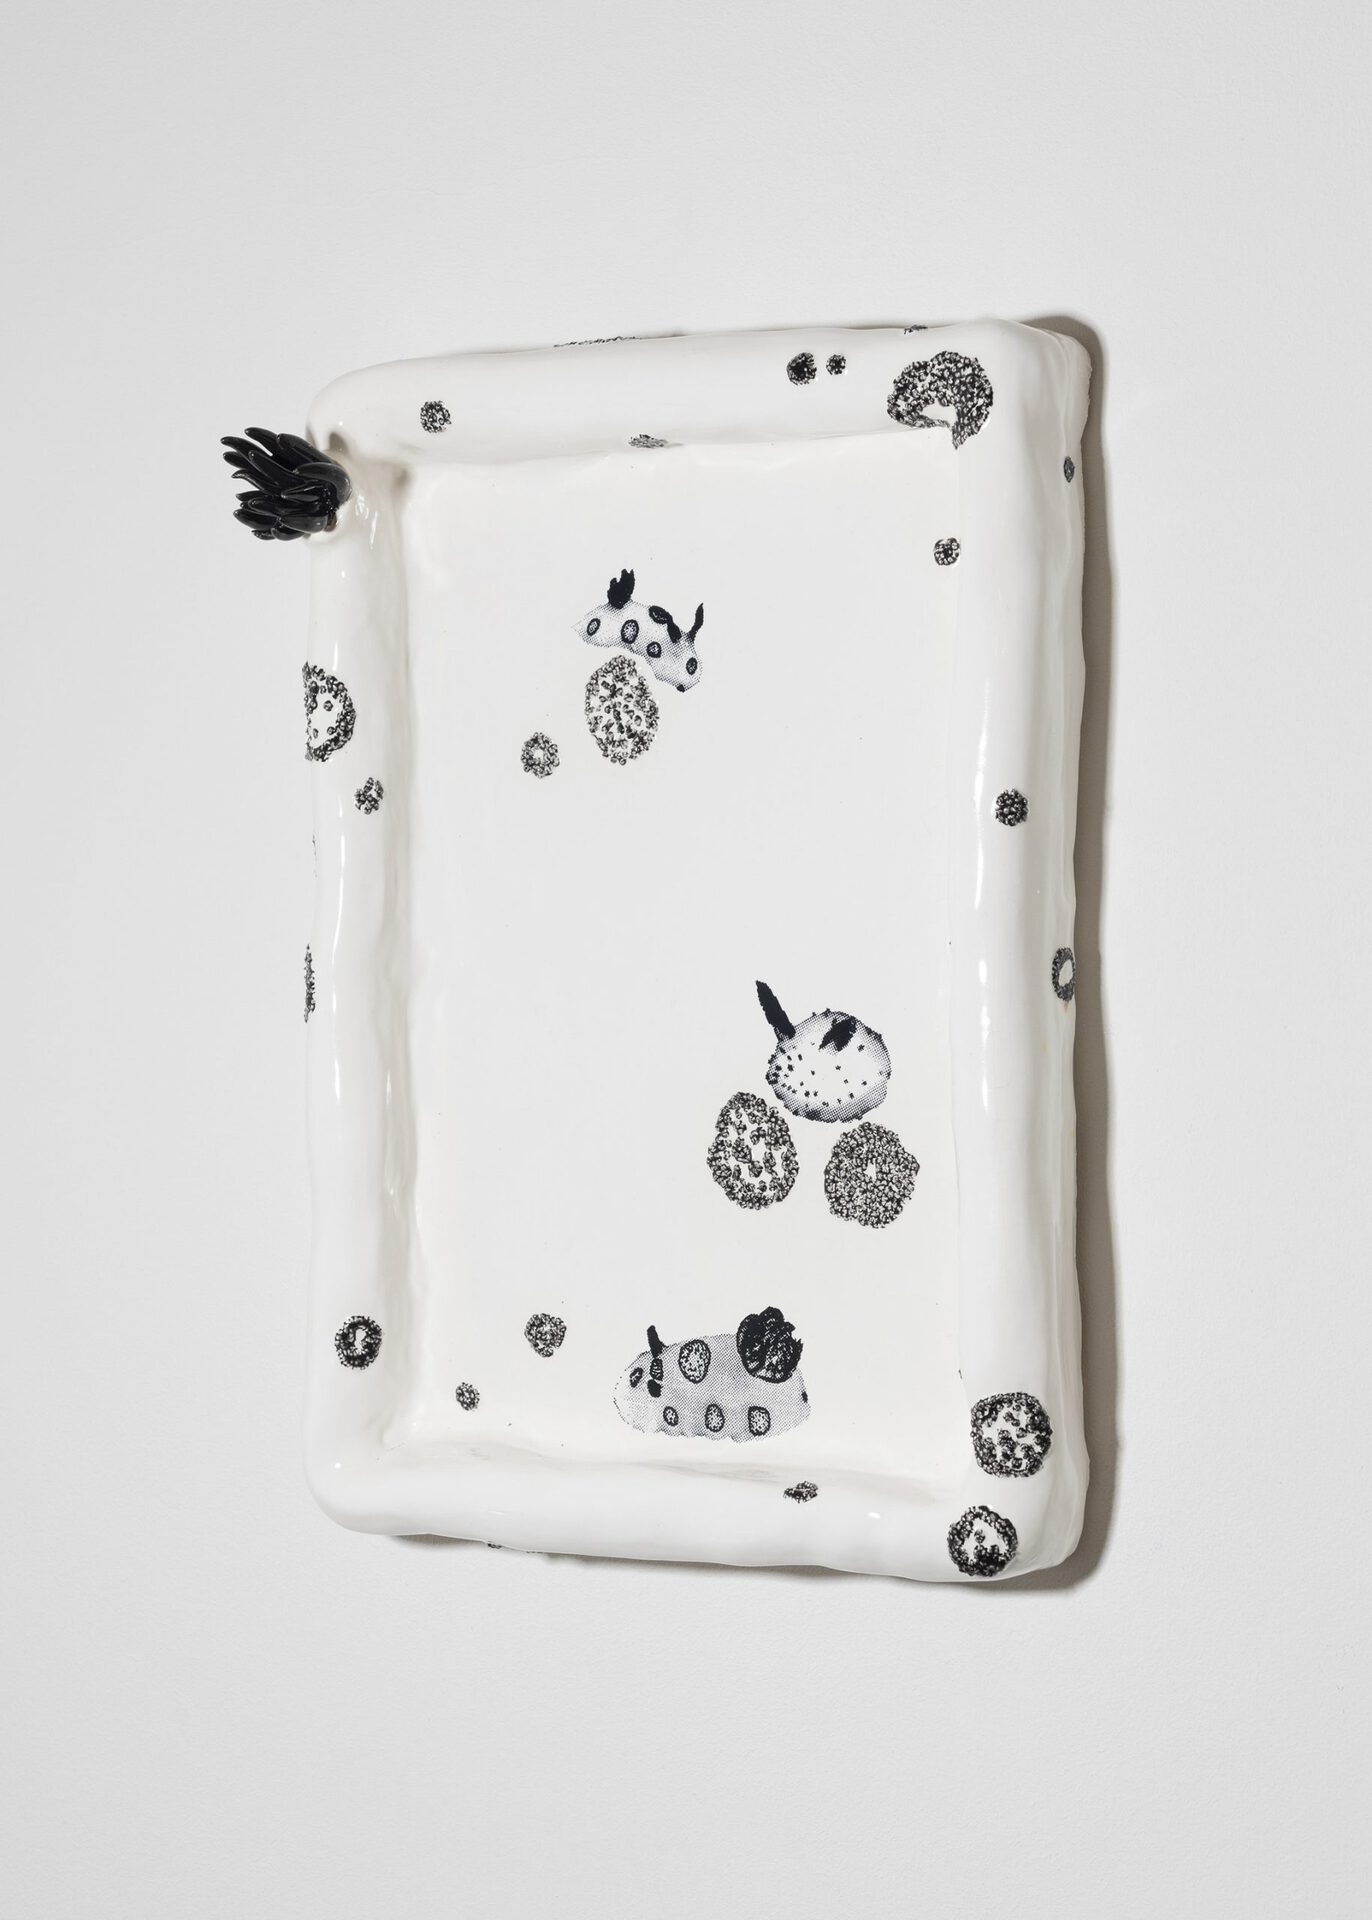 June Fischer, Jorunna Funebris (Seabunny), 2020, Silkscreen on porcelain, 21 x 29.7 cm